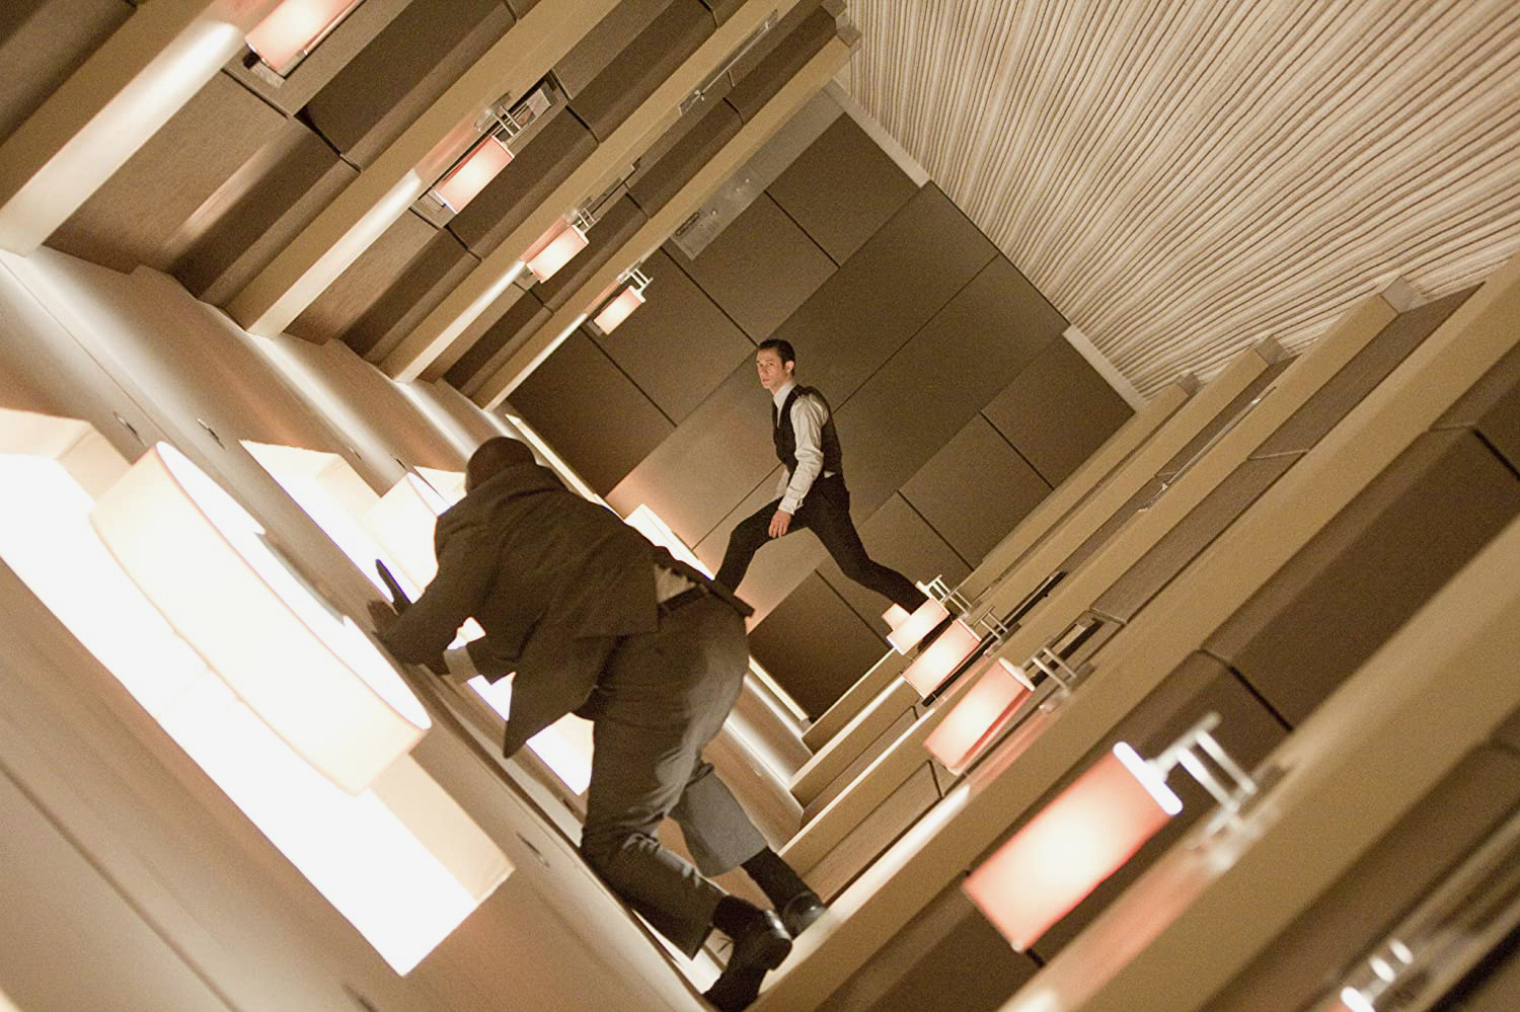 «Начало» удивляет изобретательными экшен-сценами. В одной, например, герои сражаются в крутящемся коридоре. Источник: Warner Bros.